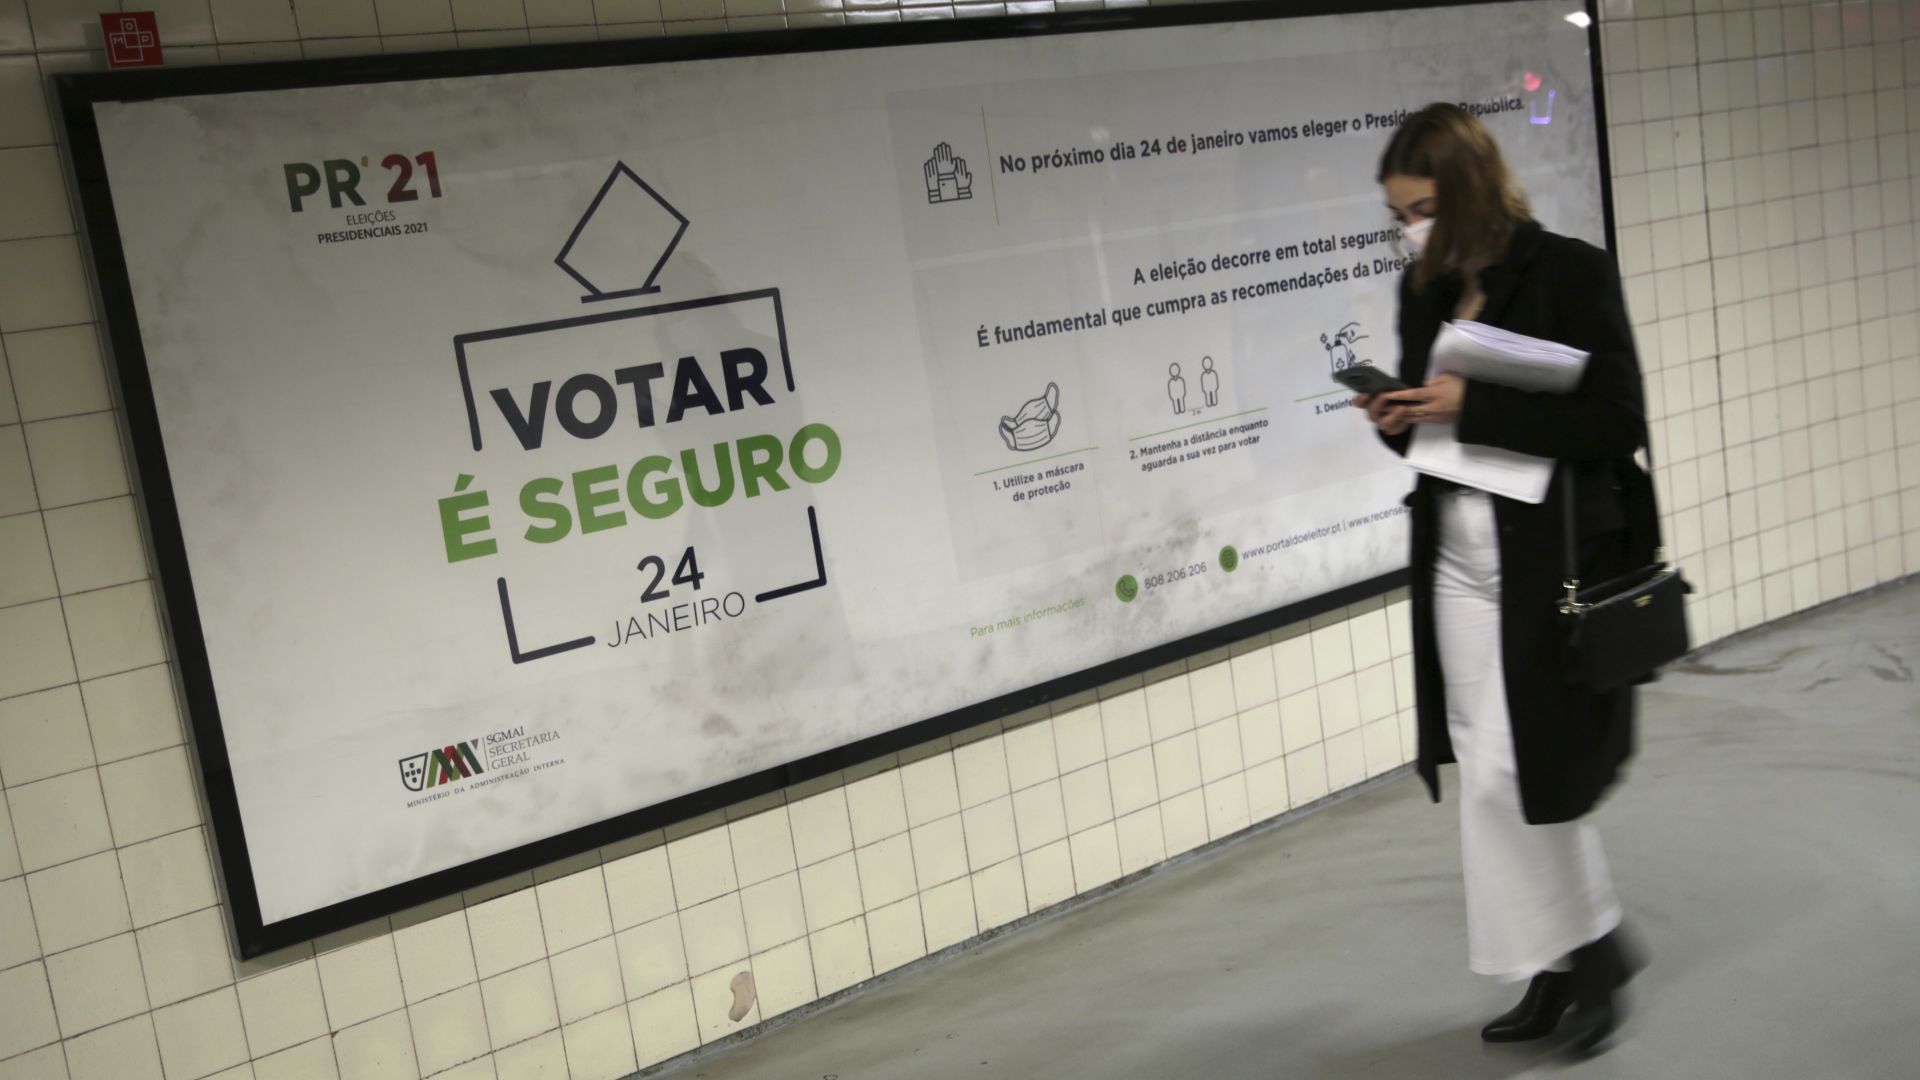 Избори при локдаун:  португалците се готвят да преизберат президента си